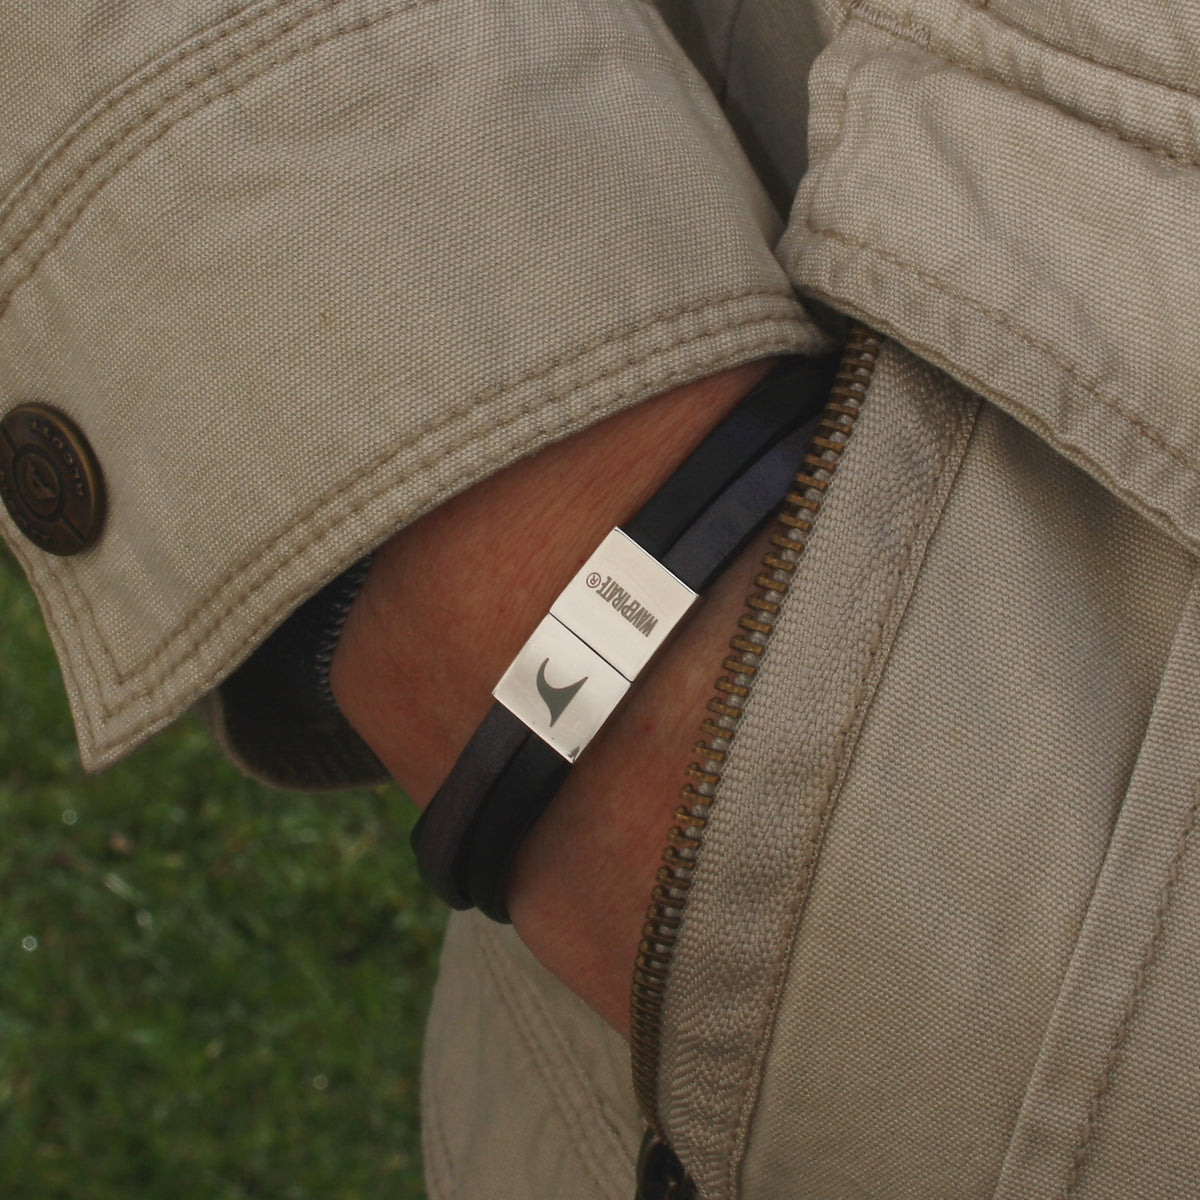 Herren-Leder-Armband-Twist-schwarz-grau-flach-Edelstahlverschluss-getragen-wavepirate-shop